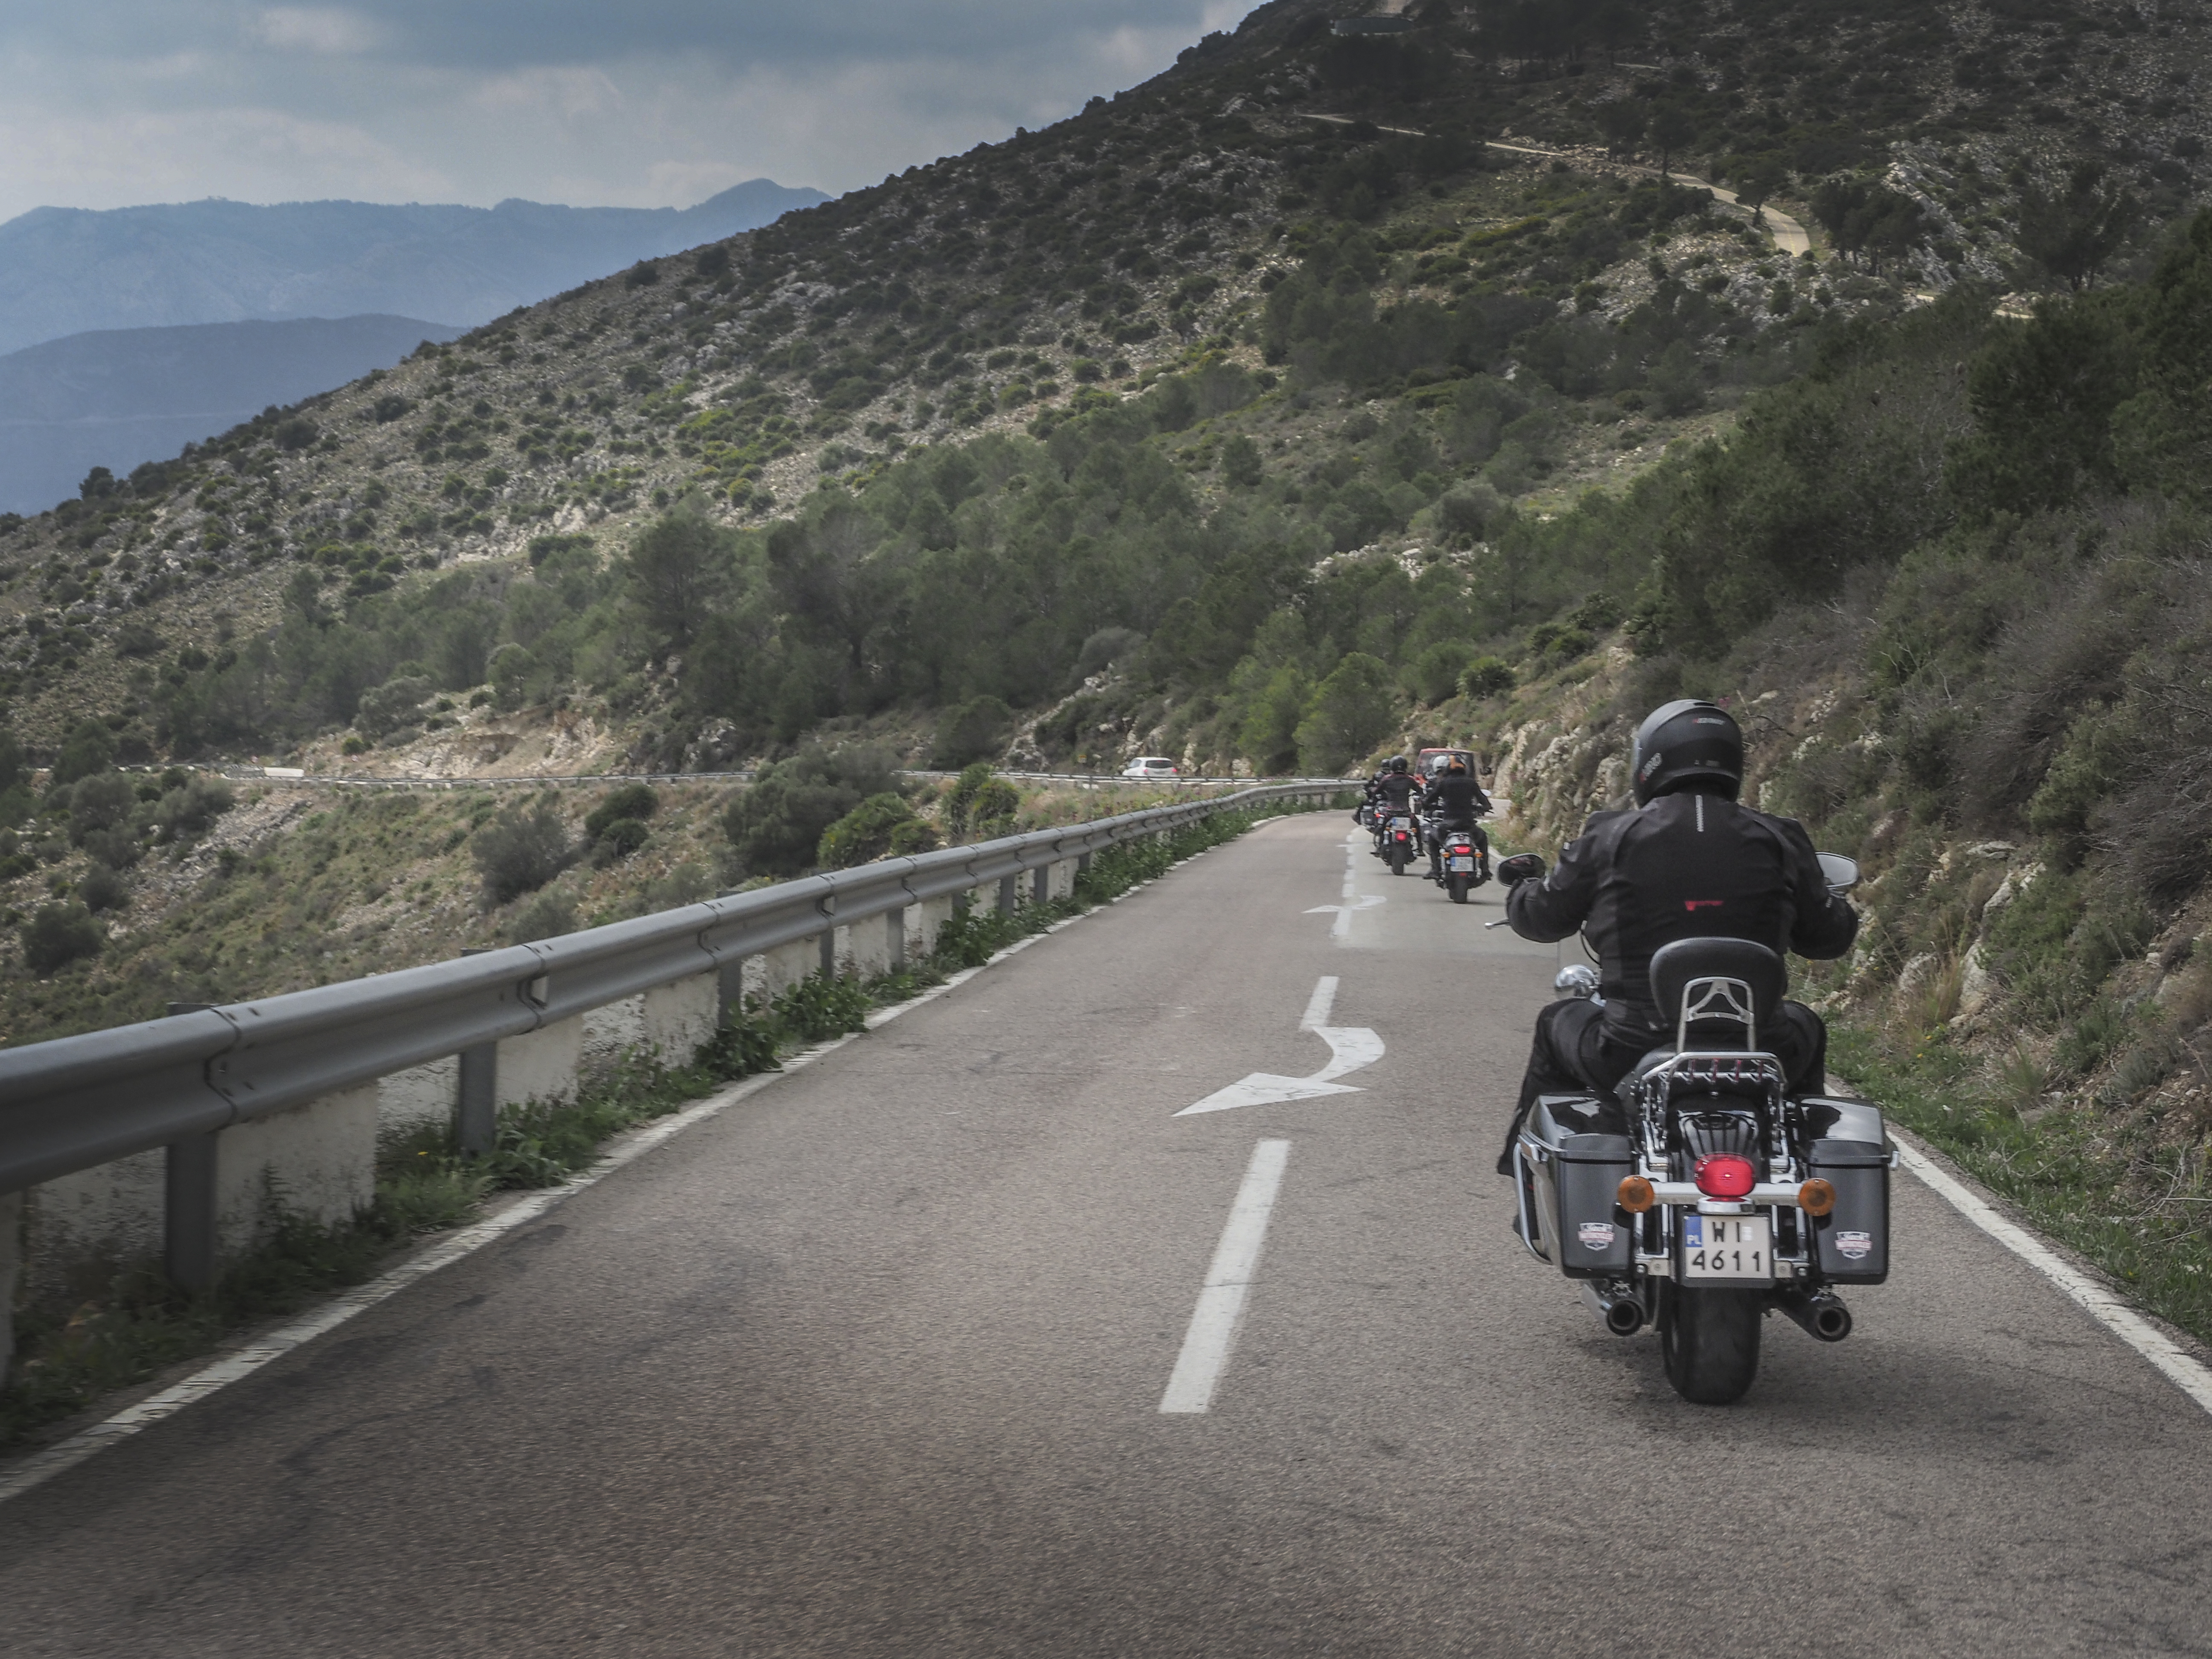 Jack's Motorcycle, wyprawa do Hiszpanii, zdjęcia Tobiasz Kukieła